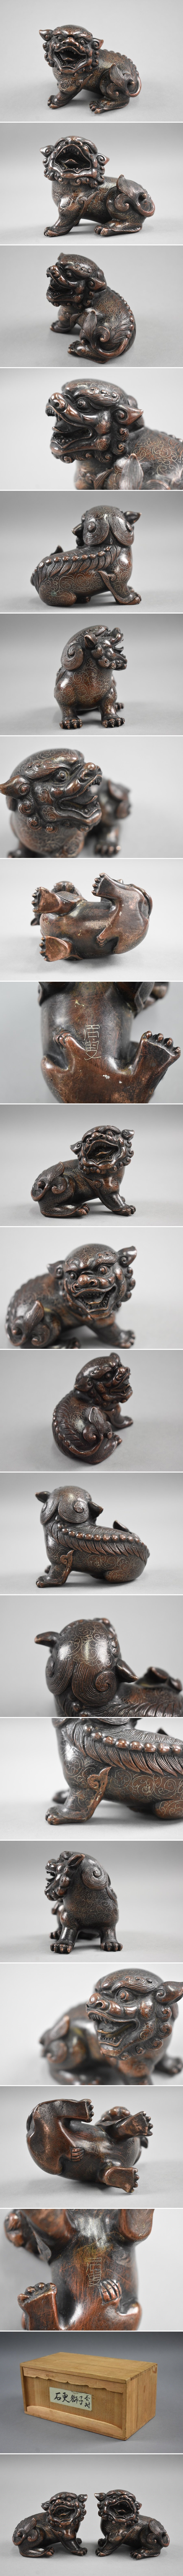 【即時発送】中国古玩 石叟 象嵌細工 古銅製 獅子一対 置物 箱付 細密細工 古美術品[a124] その他